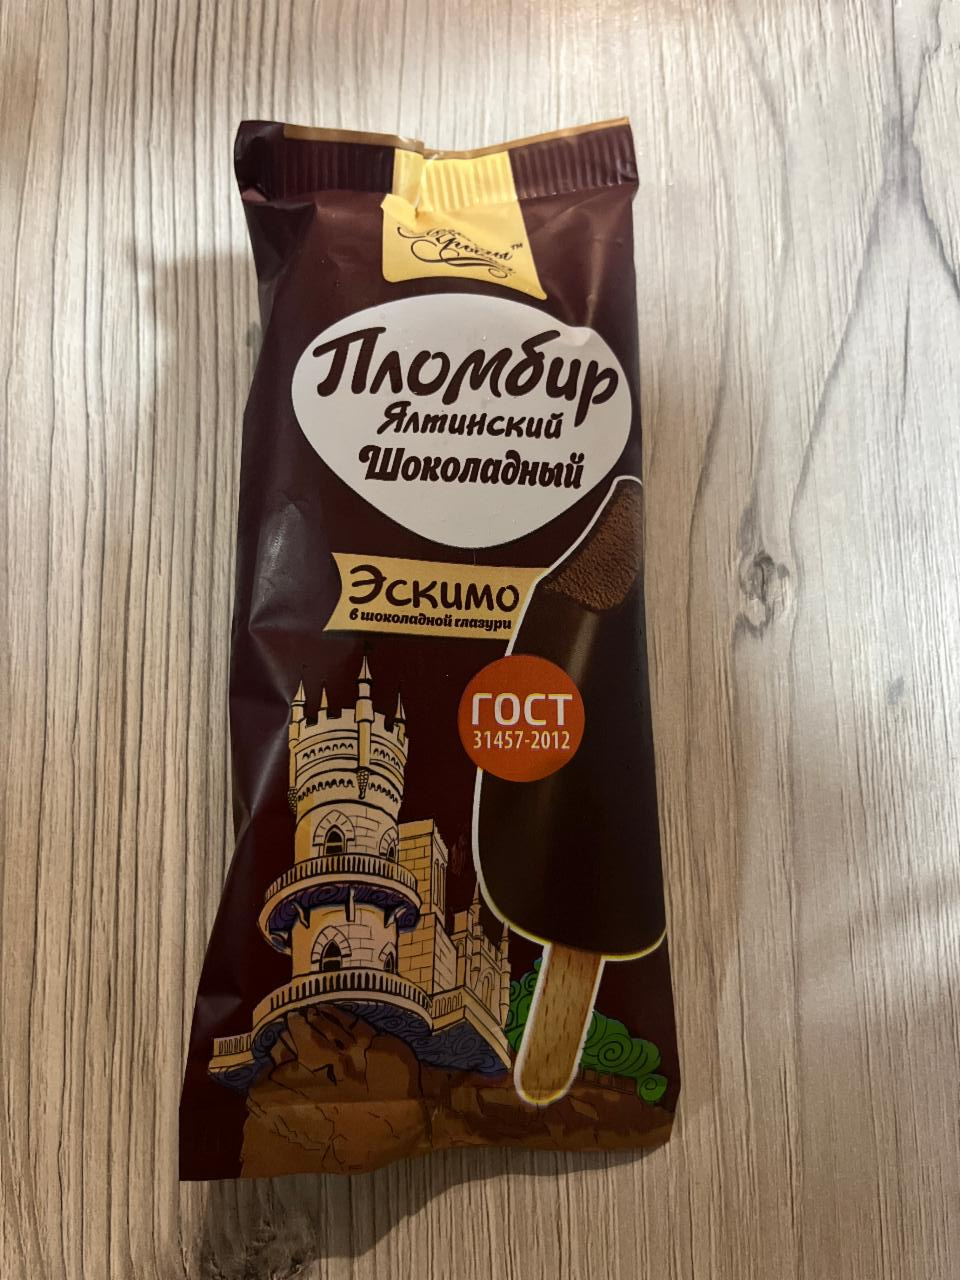 Фото - Мороженое эскимо пломбир шоколадный Ялтинский в шоколадной глазури Легенды Крыма